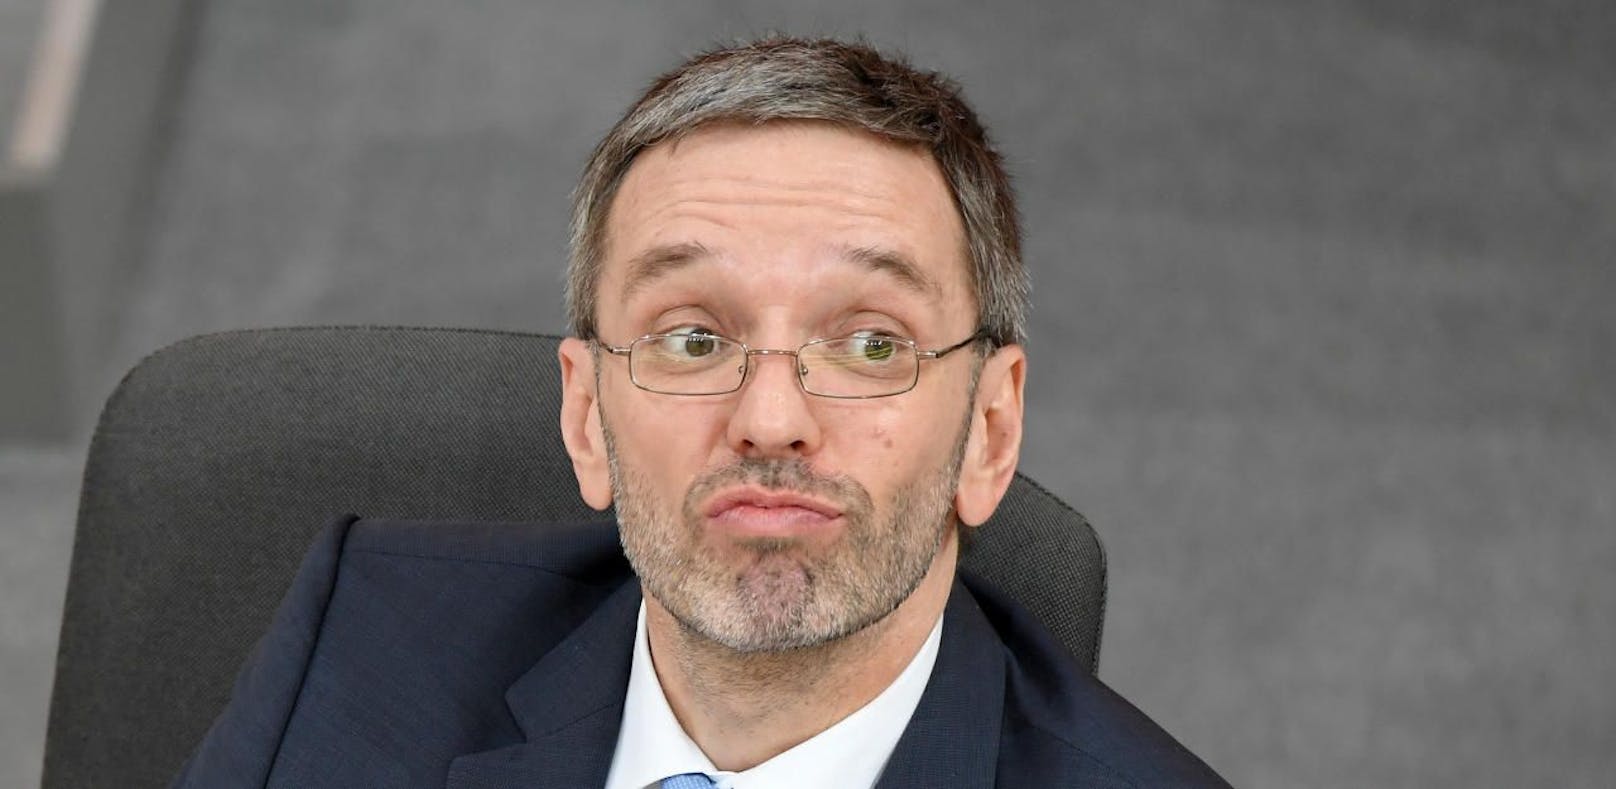 Innenminister Herbert Kickl (FPÖ) unter Druck.